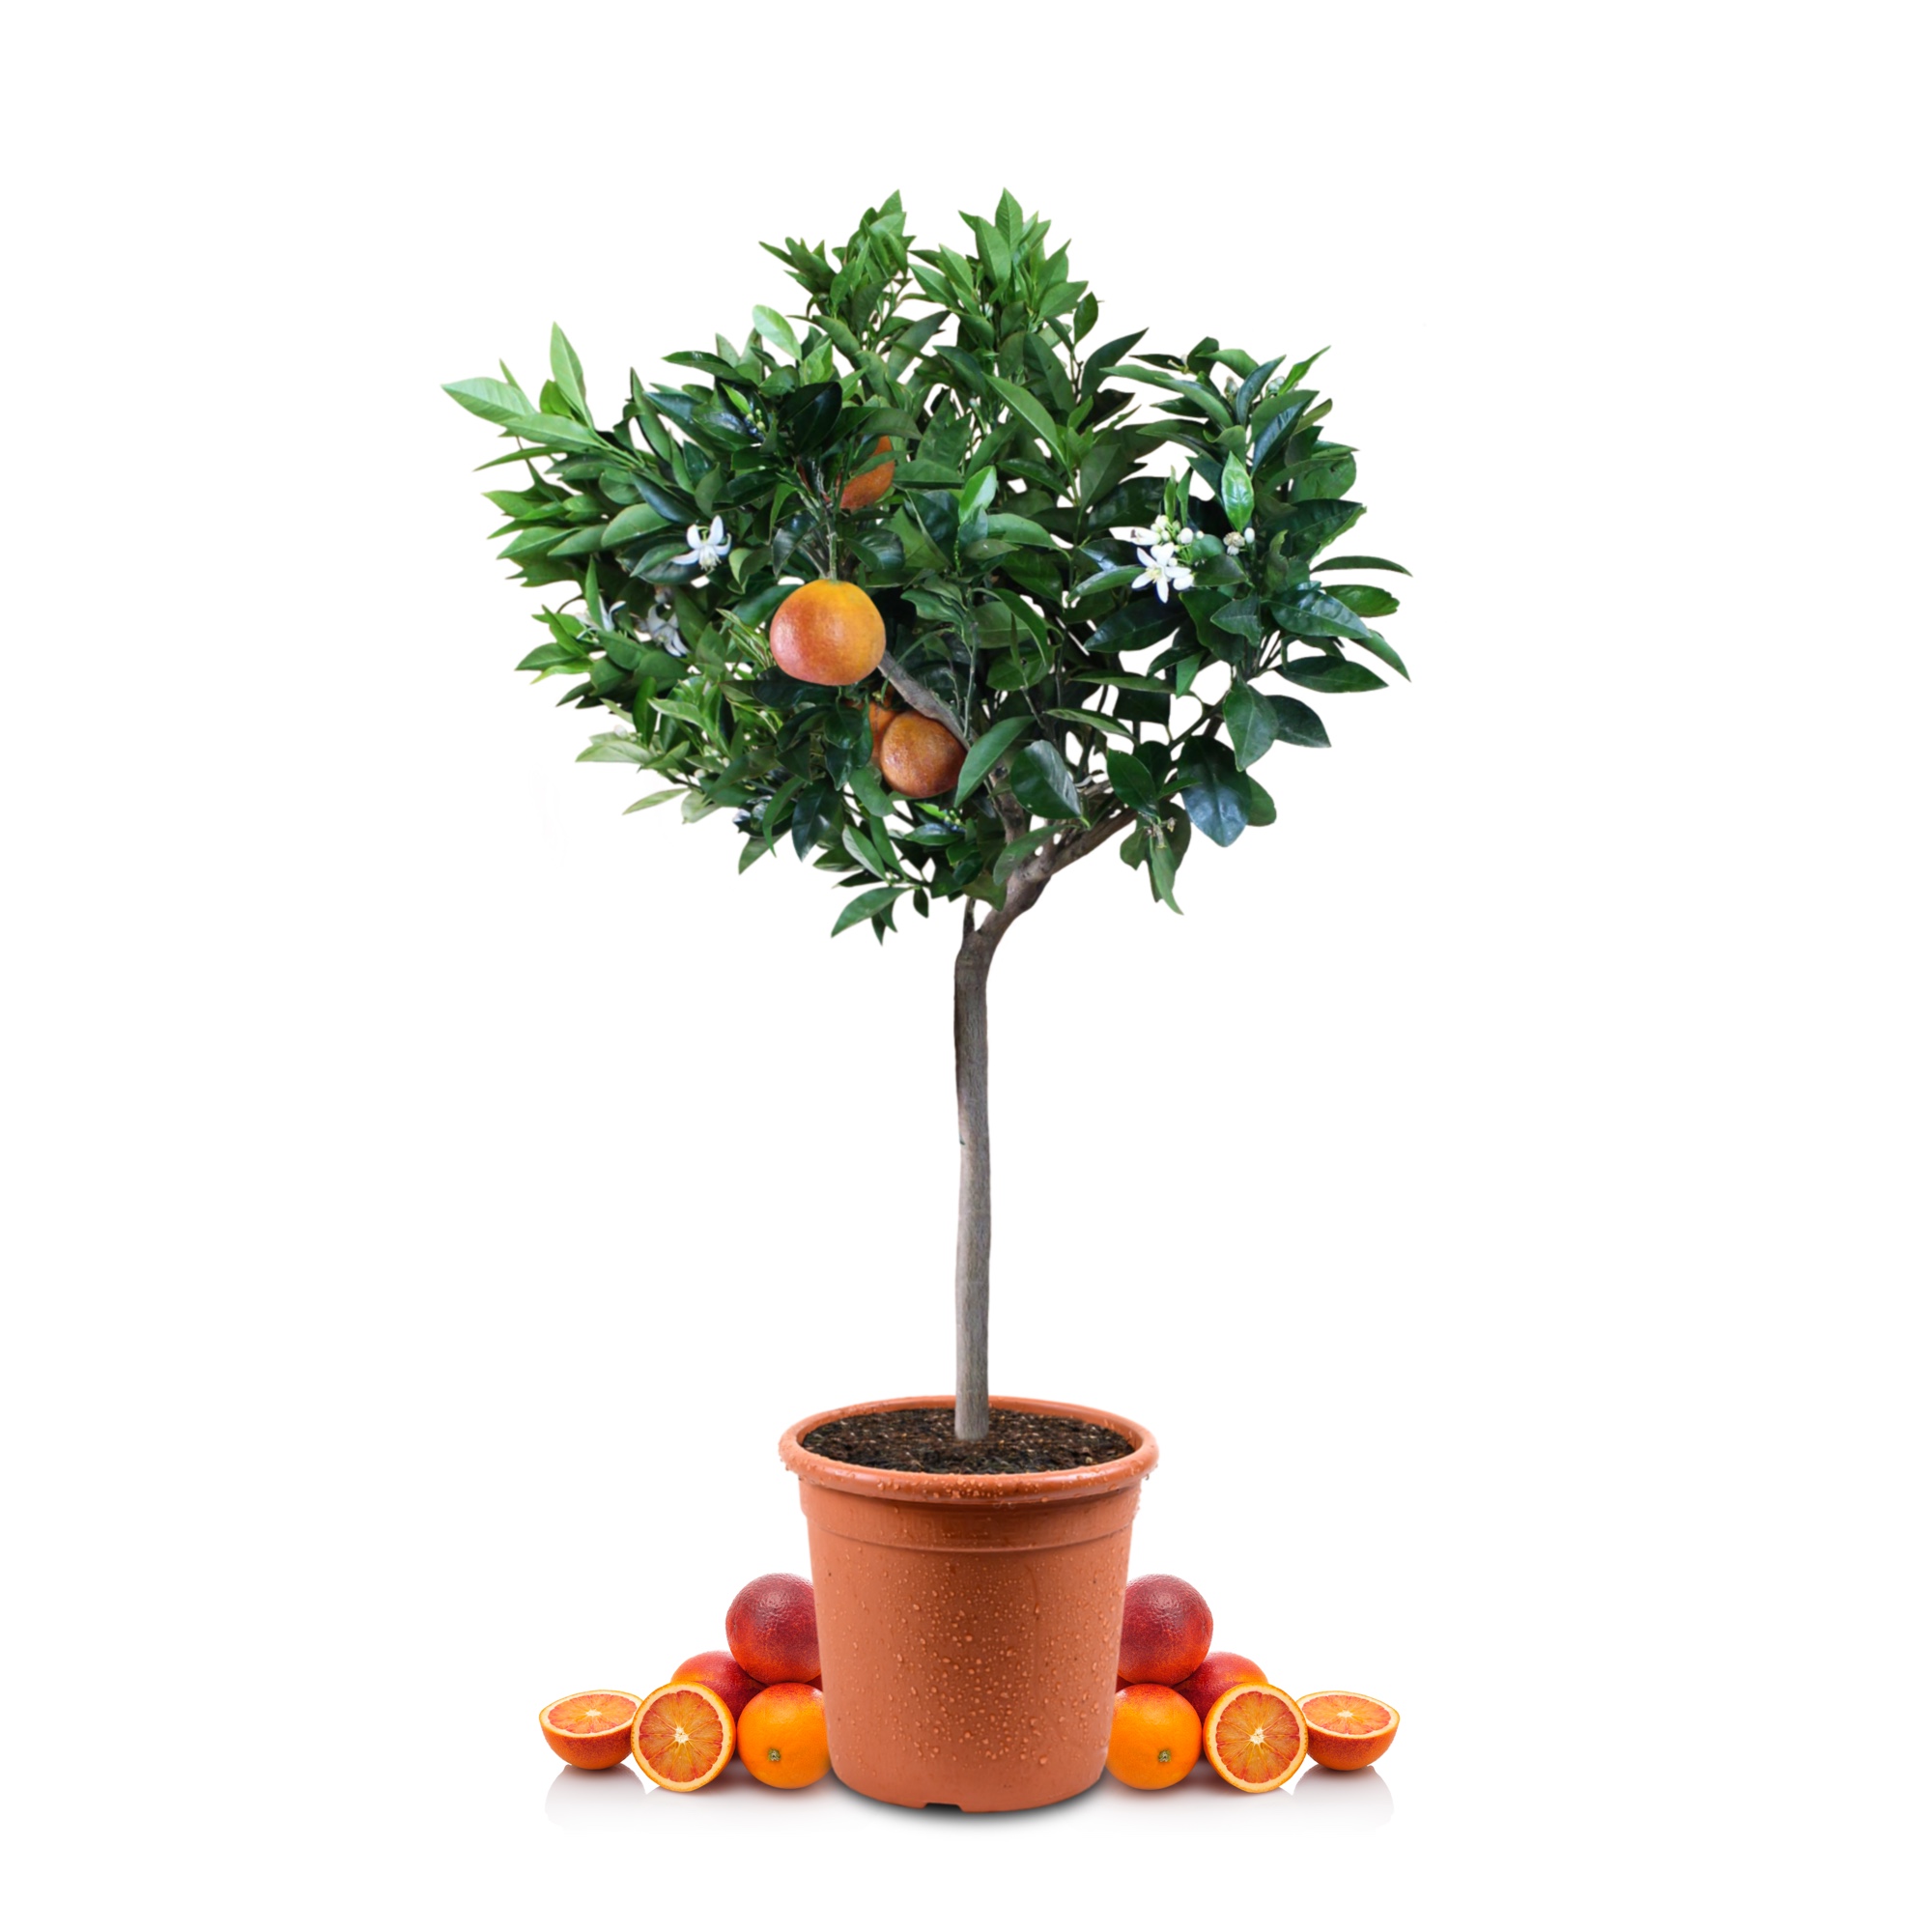 Blutorangenbaum Sanguinello - Citrus Sinensis 'Sanguinello'